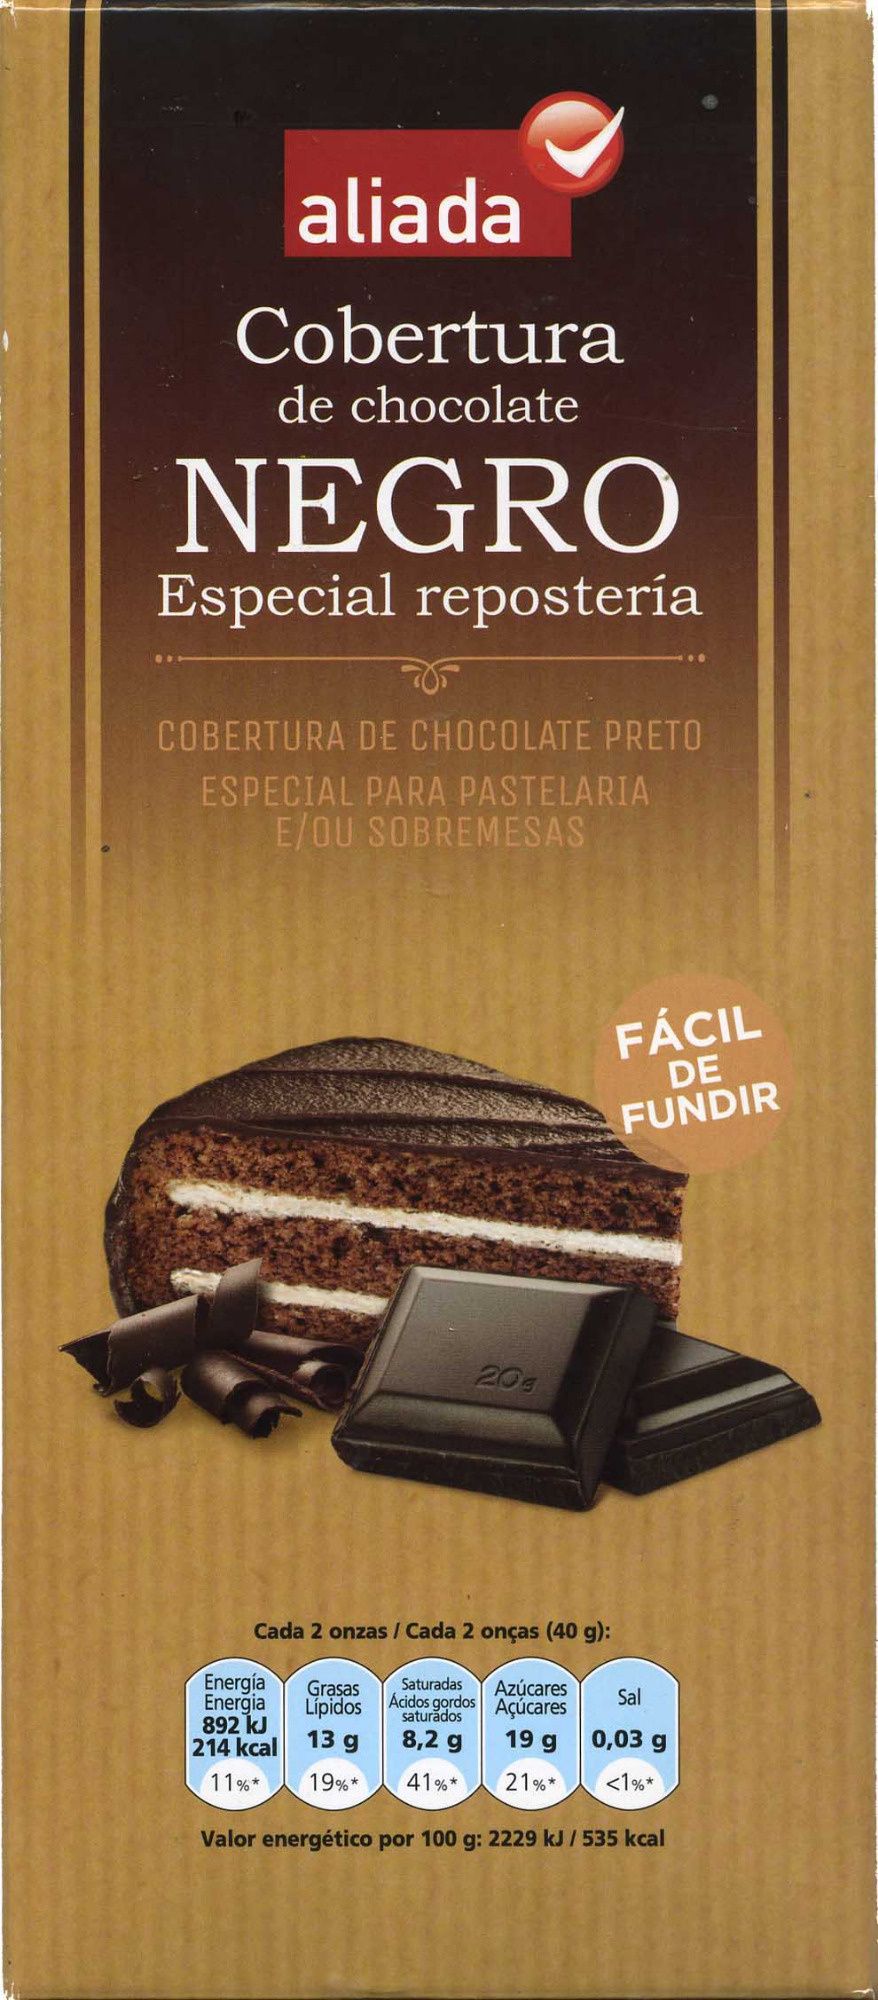 Cobertura de chocolate negro especial repostería - Product - es